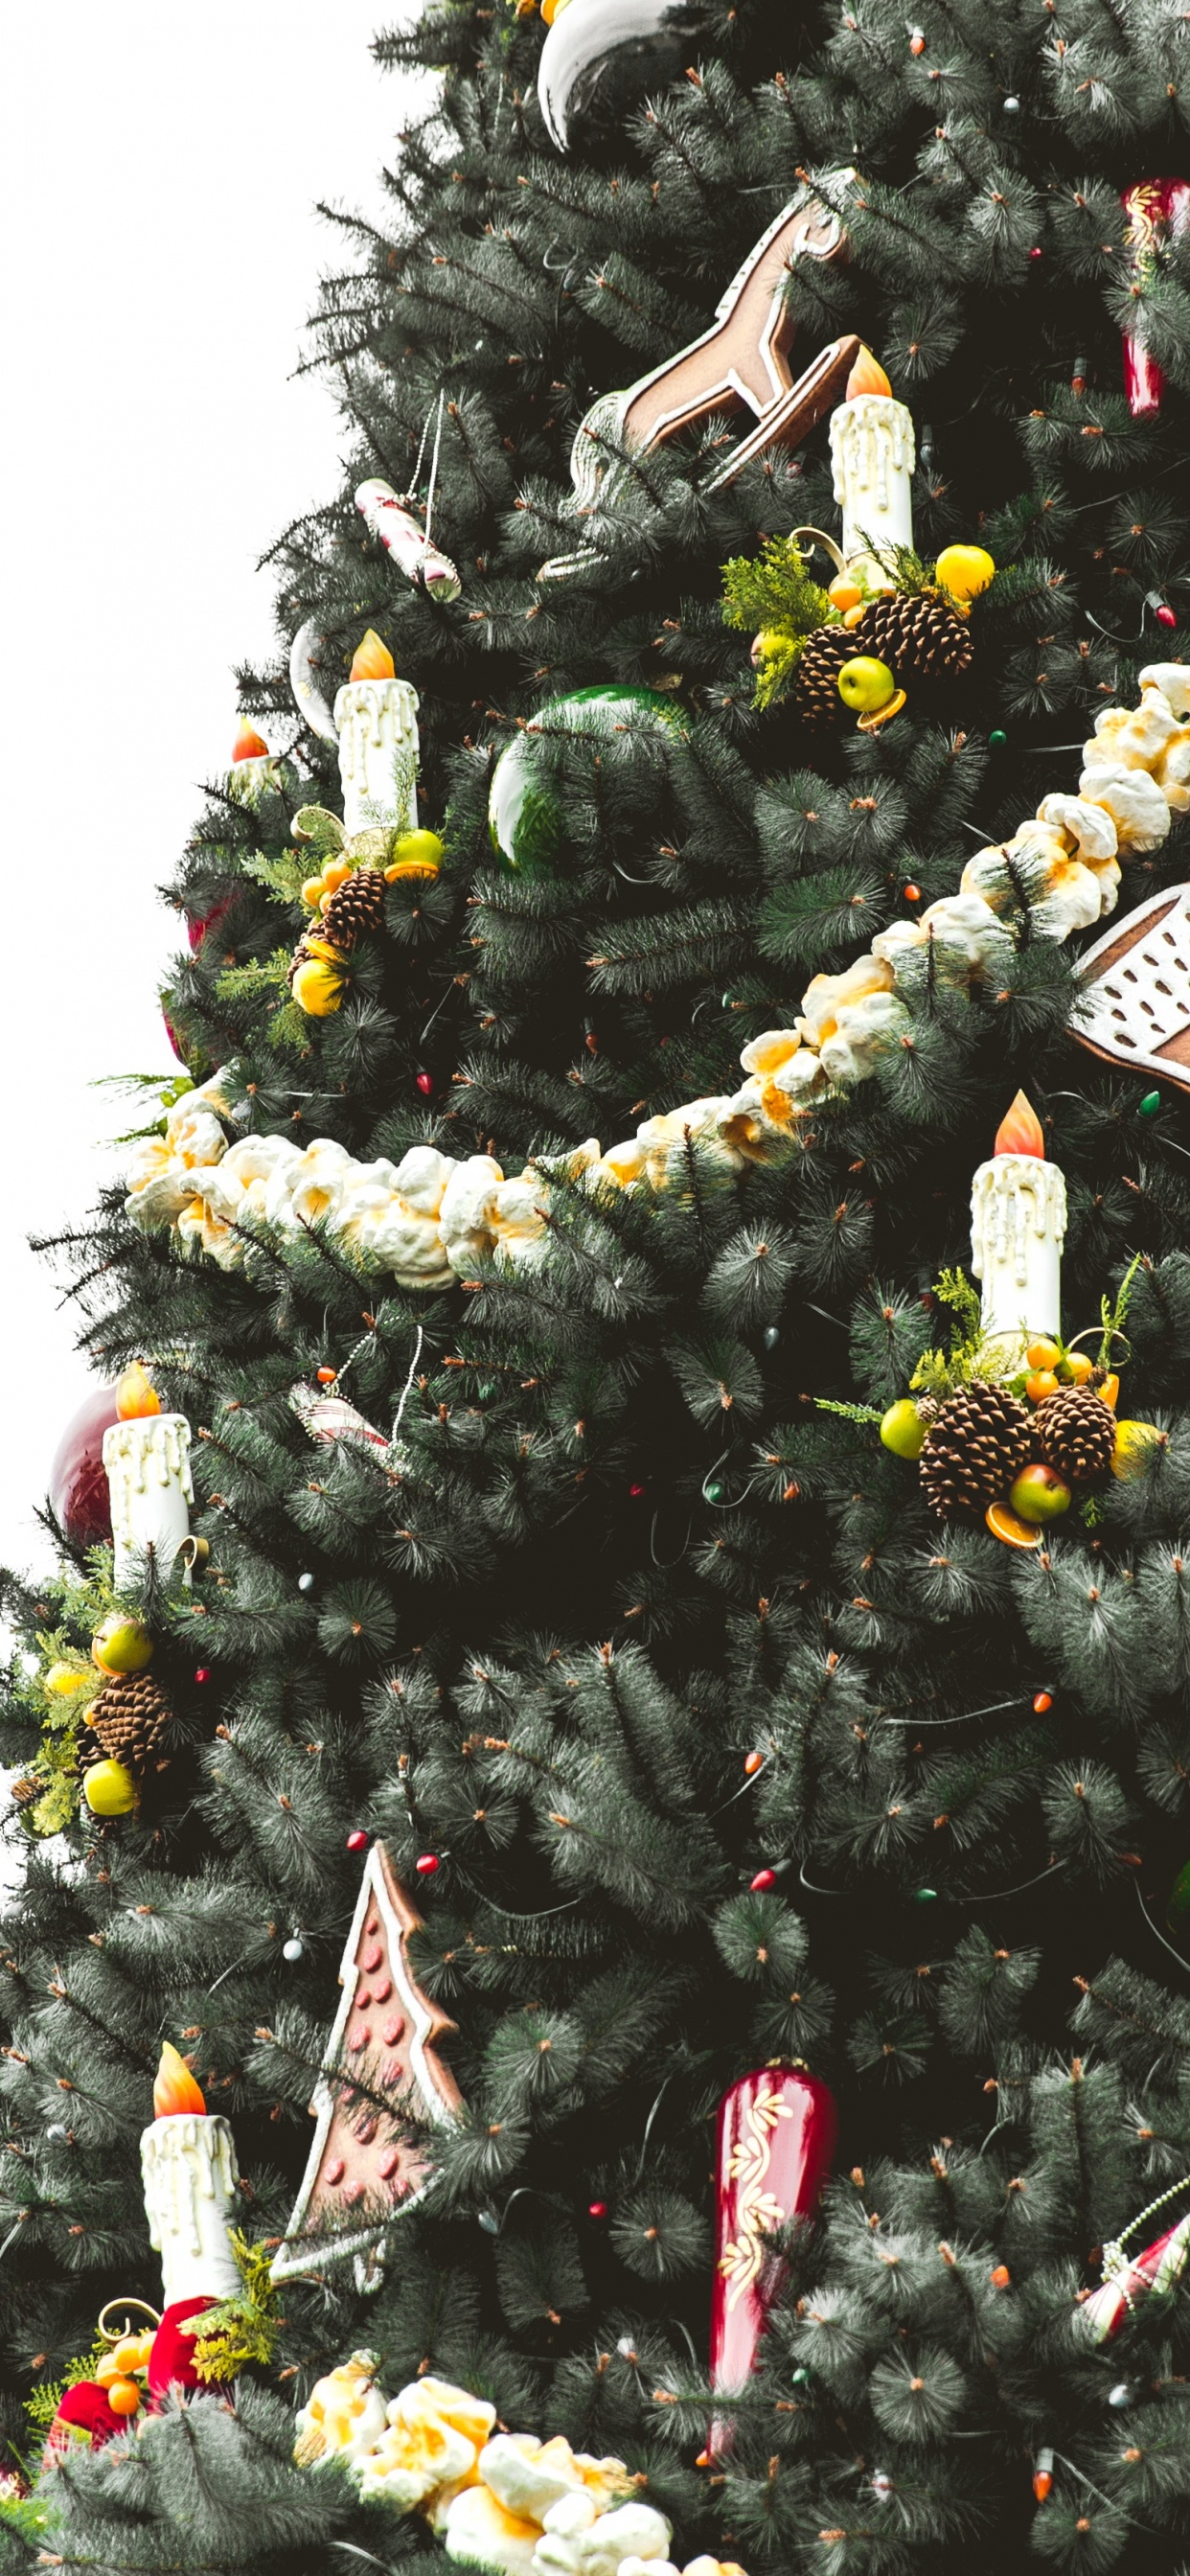 El Día De Navidad, la Navidad y la Temporada de Vacaciones, Planta Leñosa, Evergreen, Decoración de la Navidad. Wallpaper in 1242x2688 Resolution